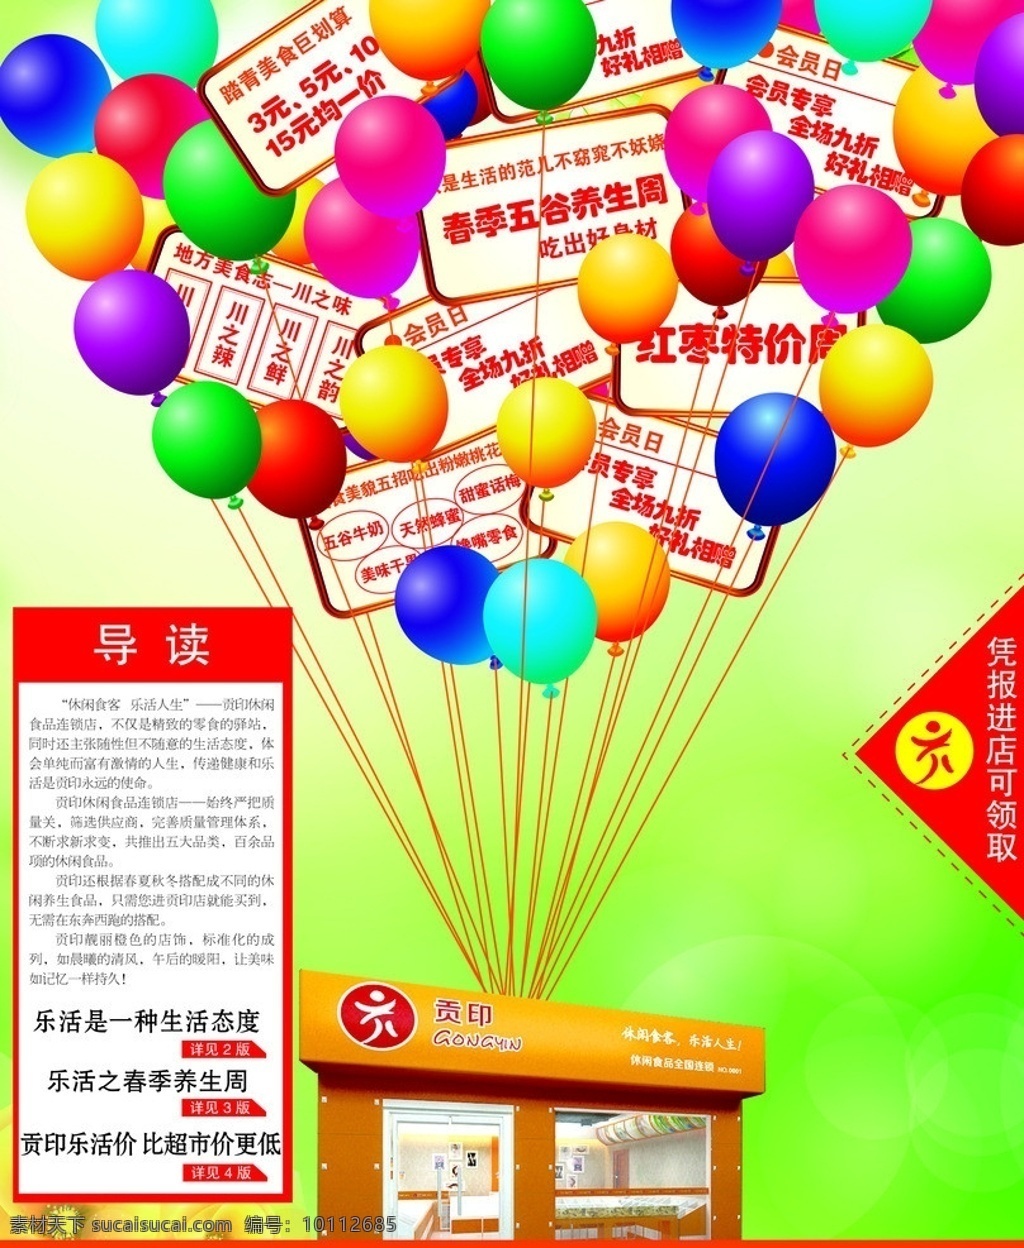 气球飞屋 气球 飞屋 房子 广告 背景 元素 养生 红枣 活泼 广告设计模板 源文件